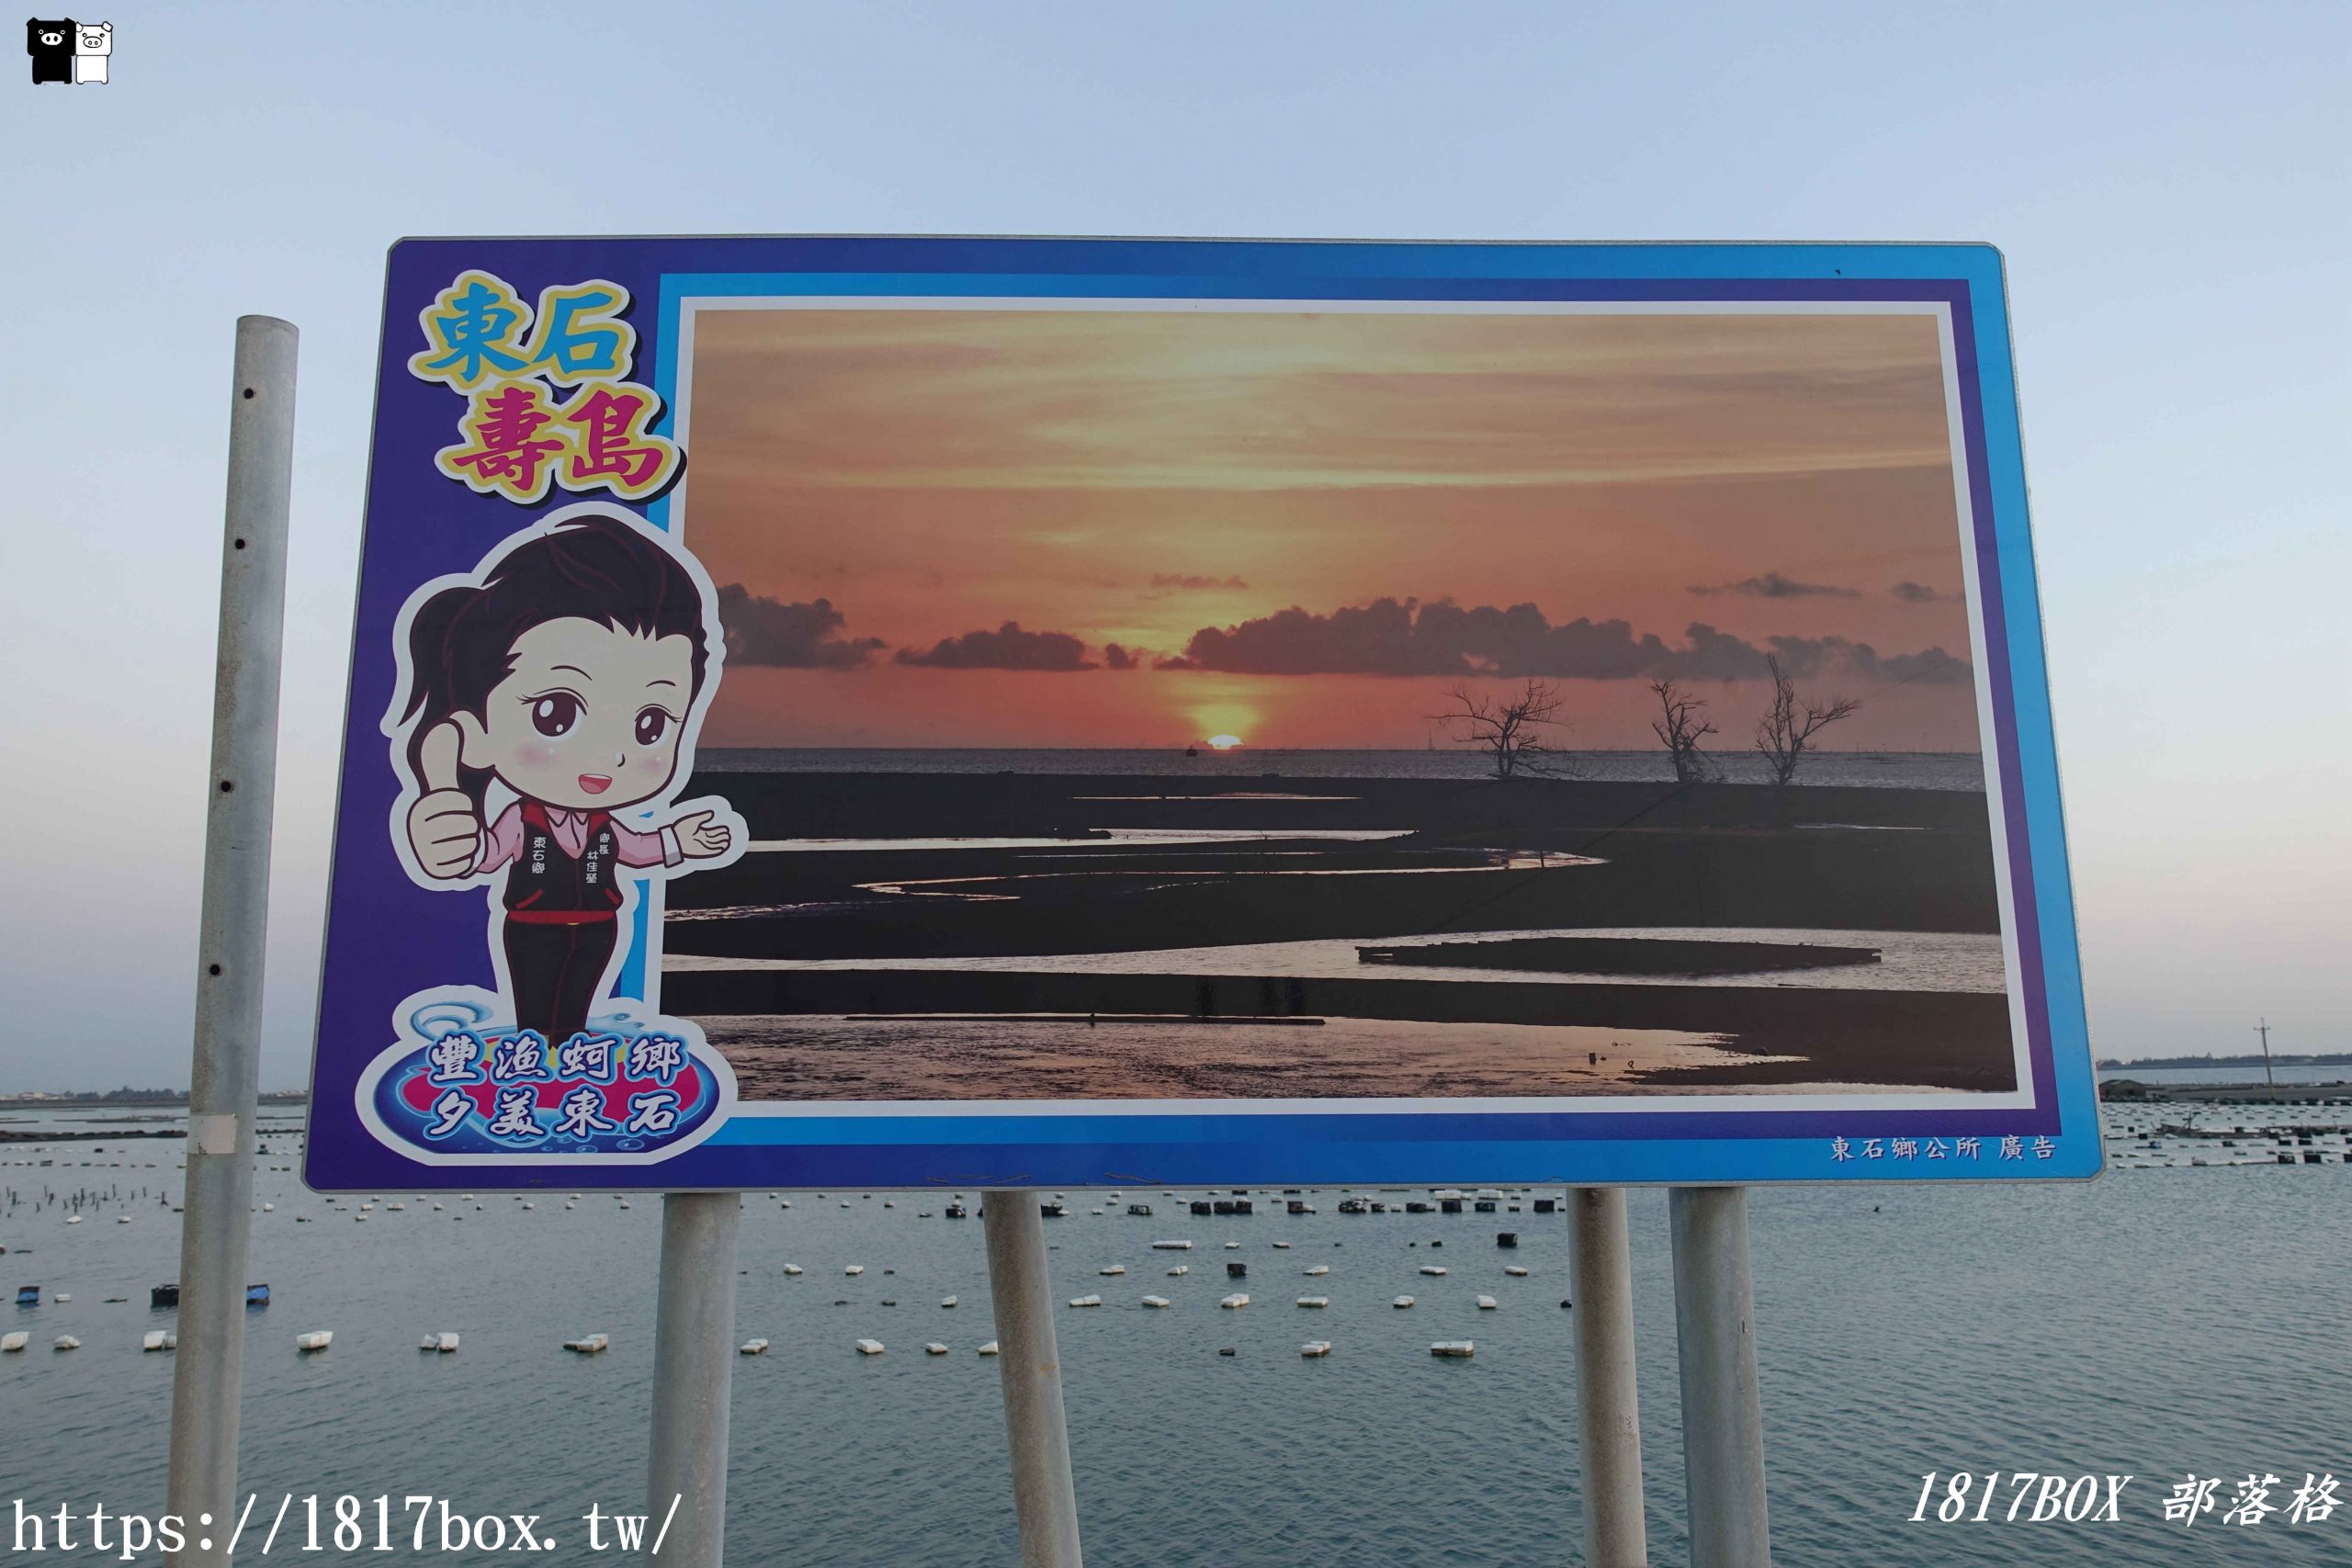 【嘉義。東石】白水湖壽島。坐擁絕美海景的露天馬桶。電影《消失的情人節》拍攝景點